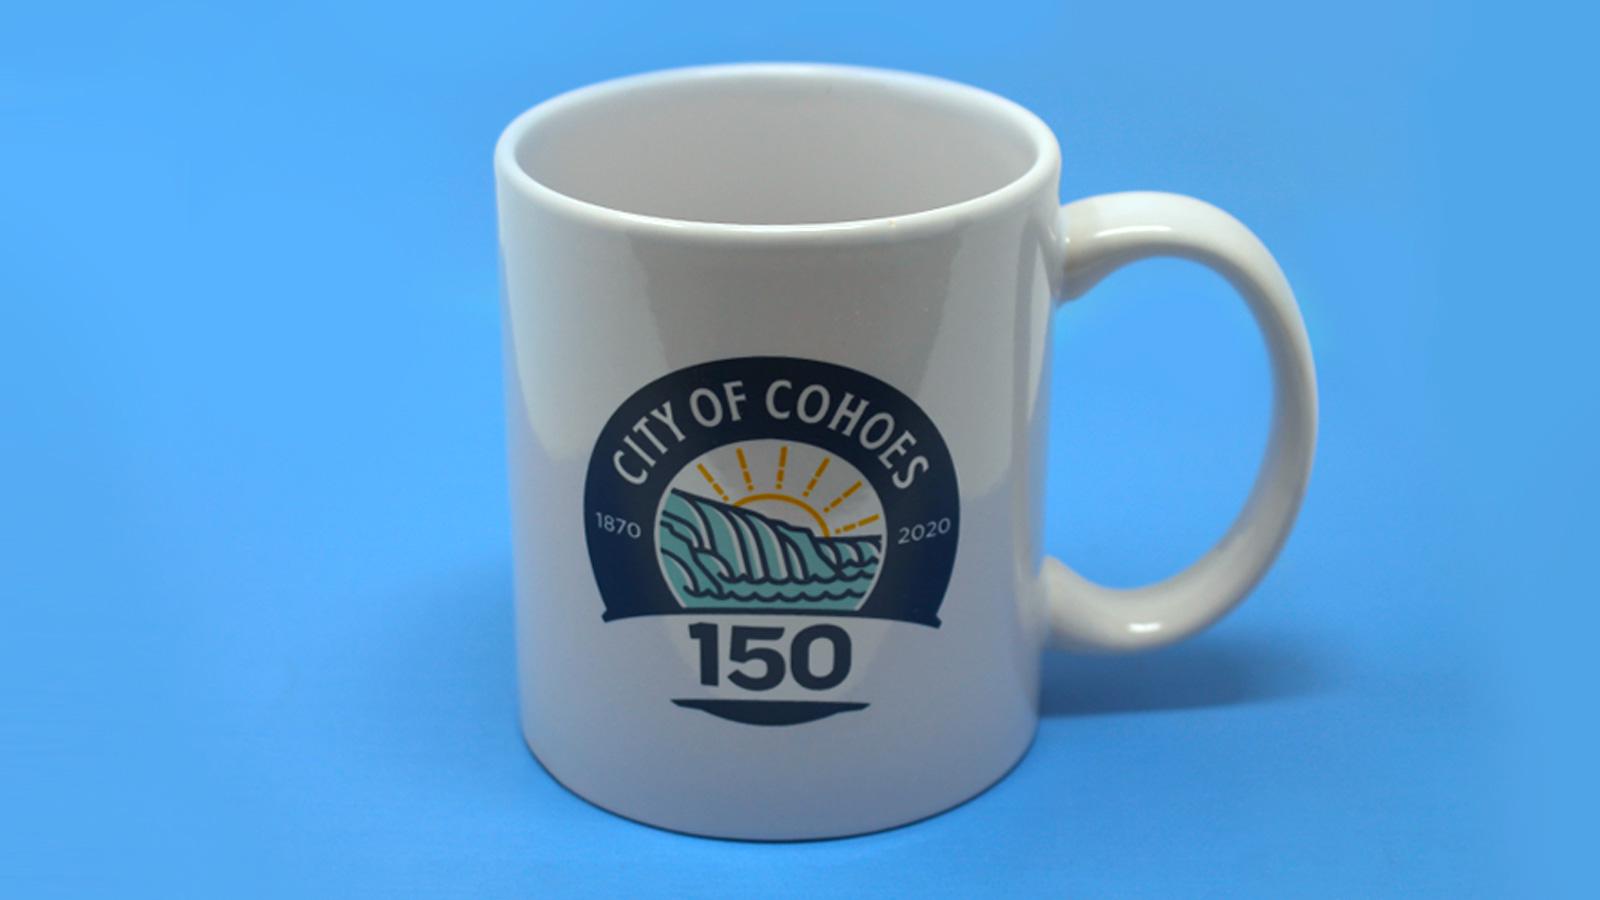 City of Cohoes | logo on mug